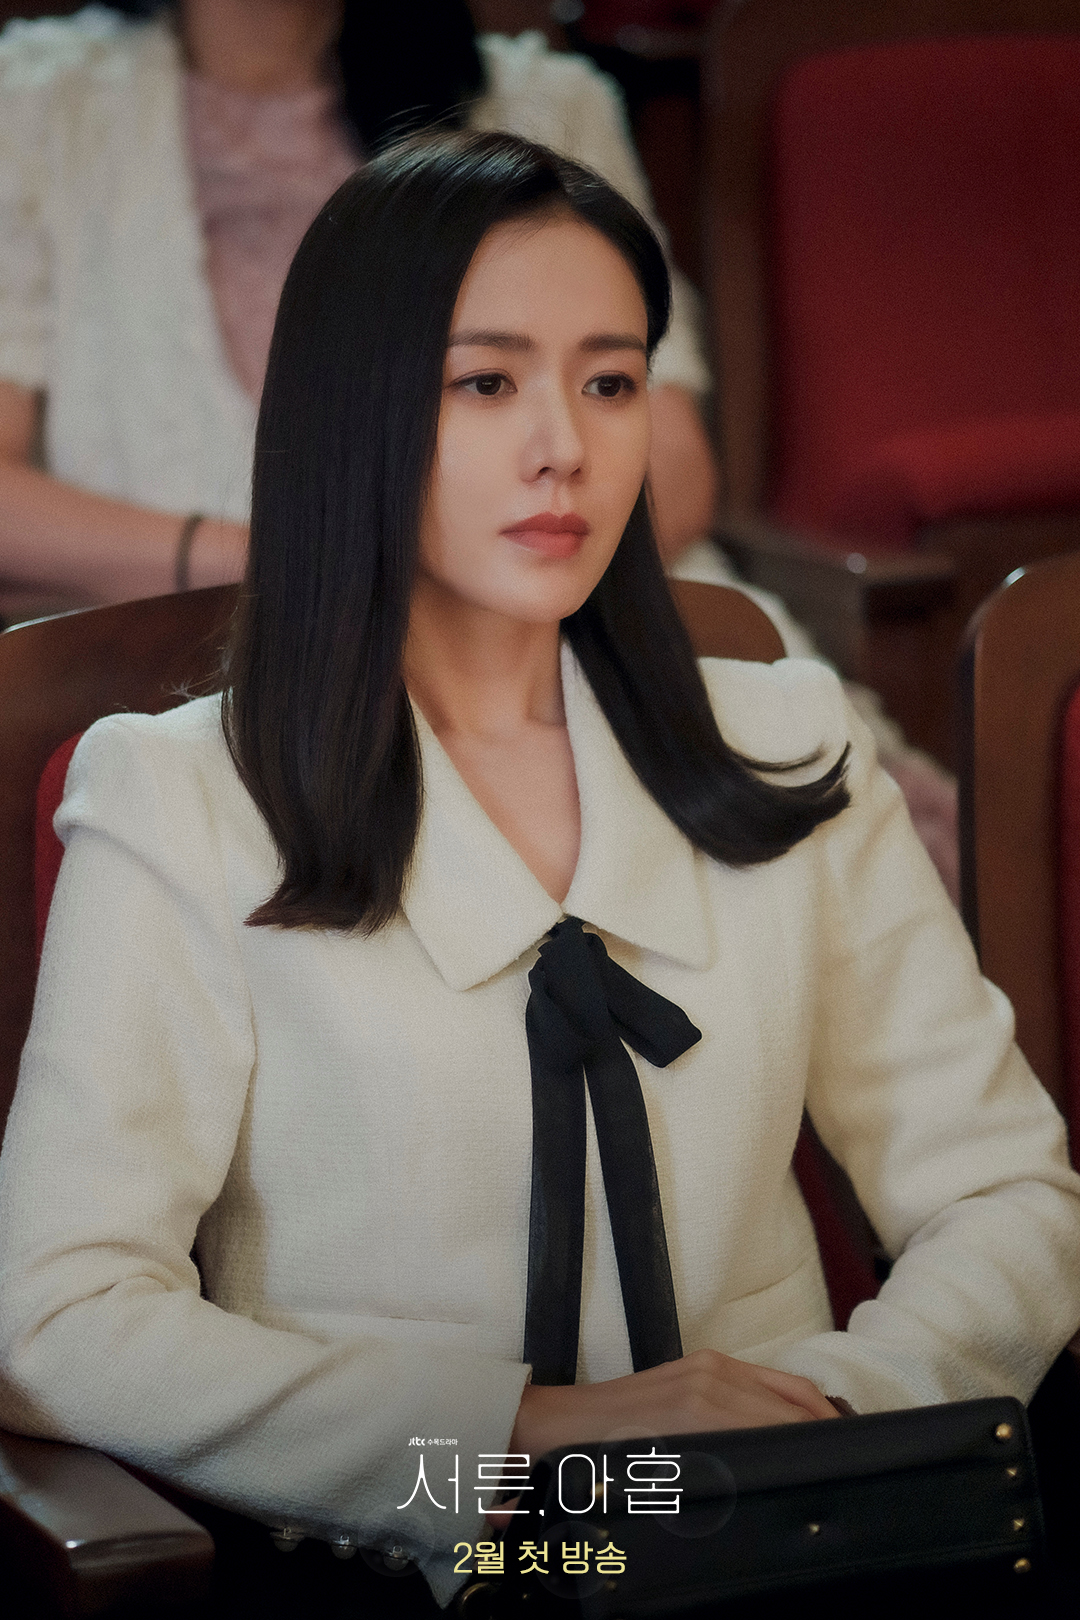 Phim Hàn 2022 chưa gì đã xuất hiện mấy mỹ nhân mặc đẹp chấn động: Cô nào cũng sang xịn mịn lại còn đóng phim hay - Ảnh 9.